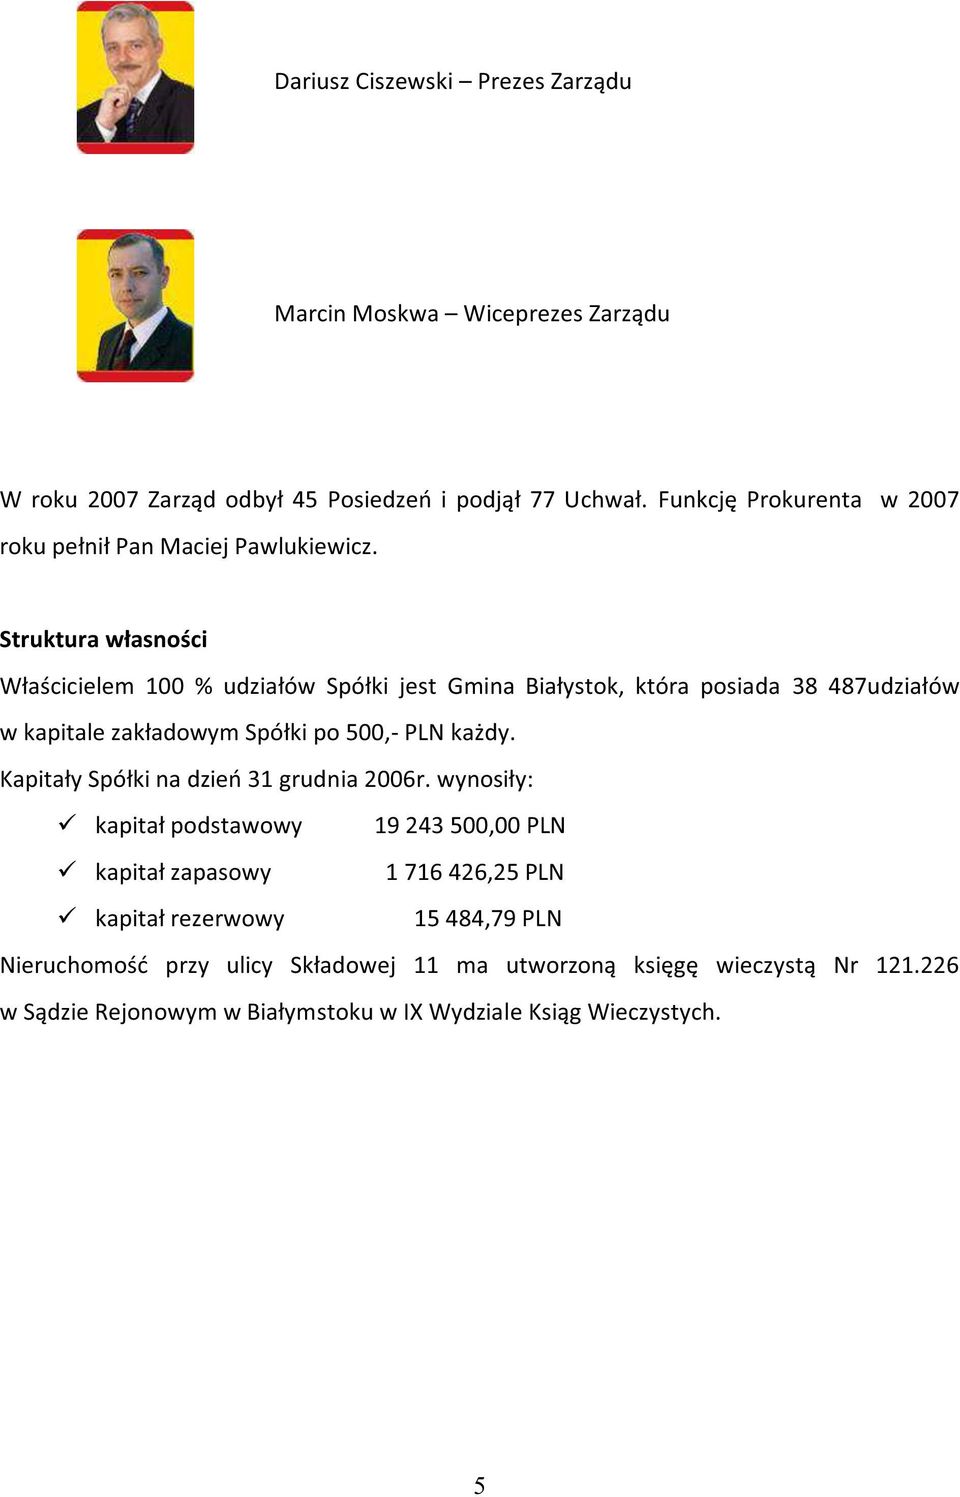 Struktura własności Właścicielem 100 % udziałów Spółki jest Gmina Białystok, która posiada 38 487udziałów w kapitale zakładowym Spółki po 500,- PLN każdy.